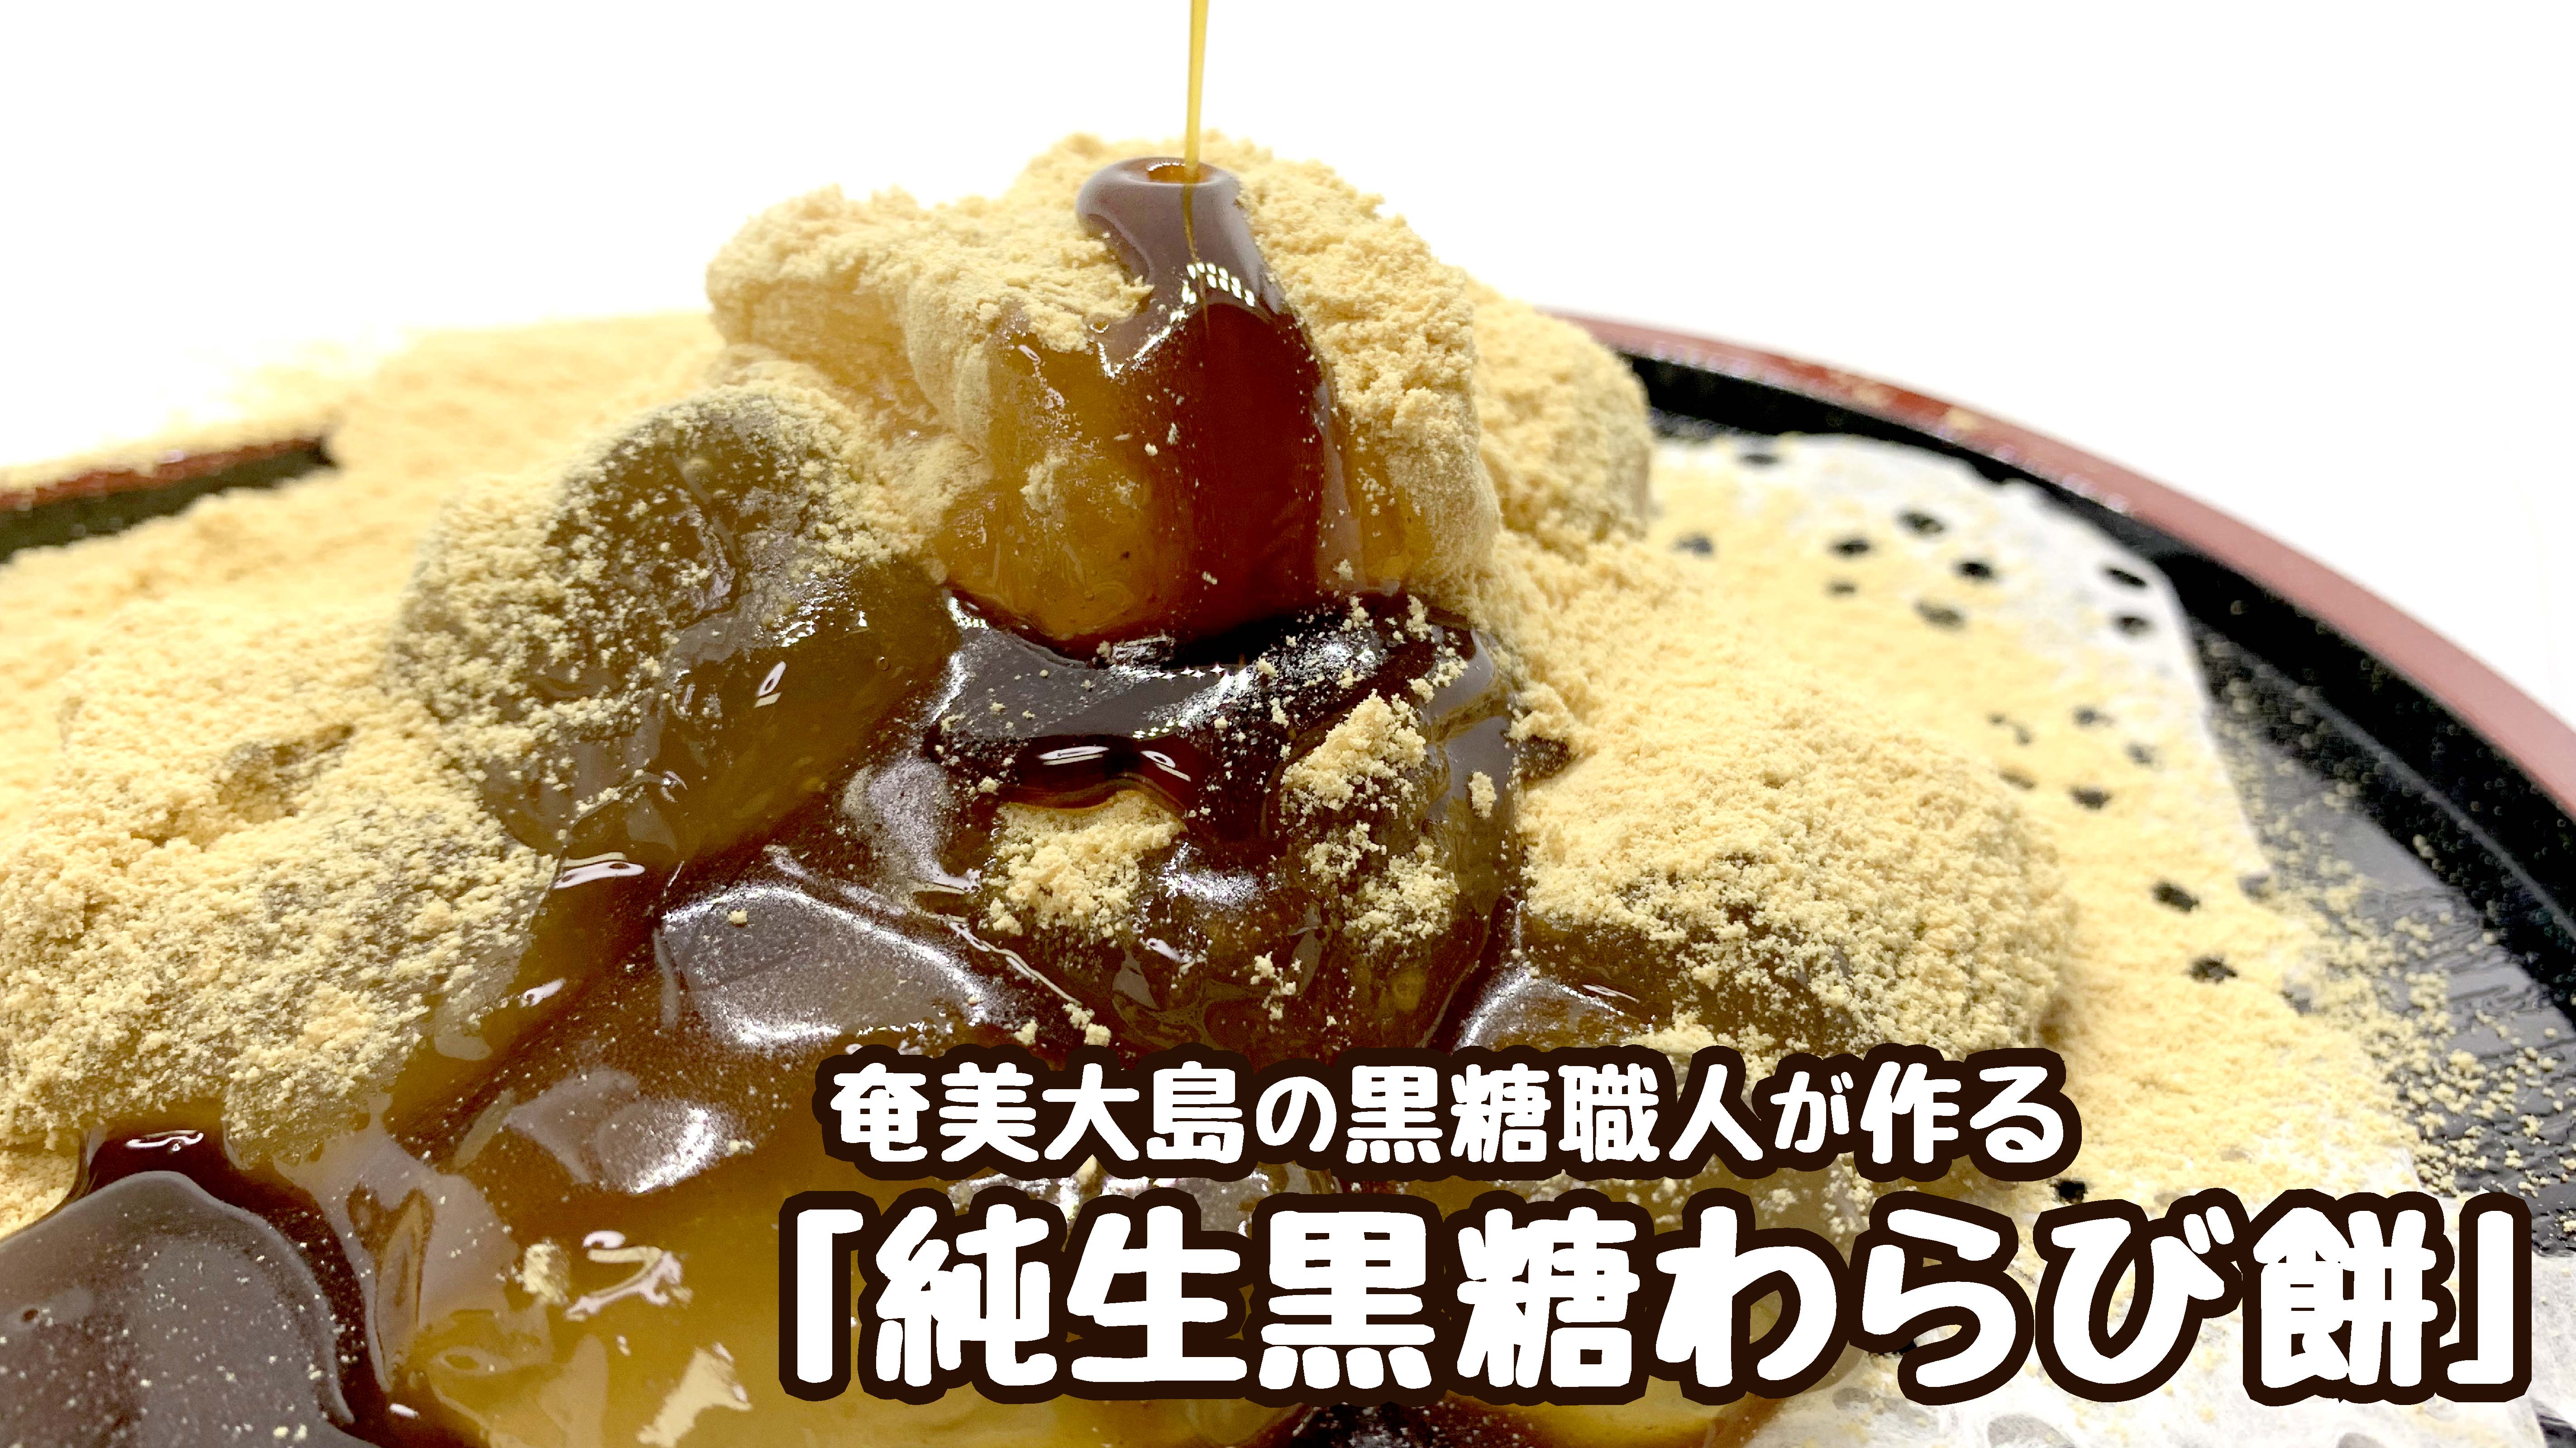 【TV・通販・物産展で大人気】奄美大島の黒糖職人が作るプルンとトロっとした『純生黒糖わらび餅』